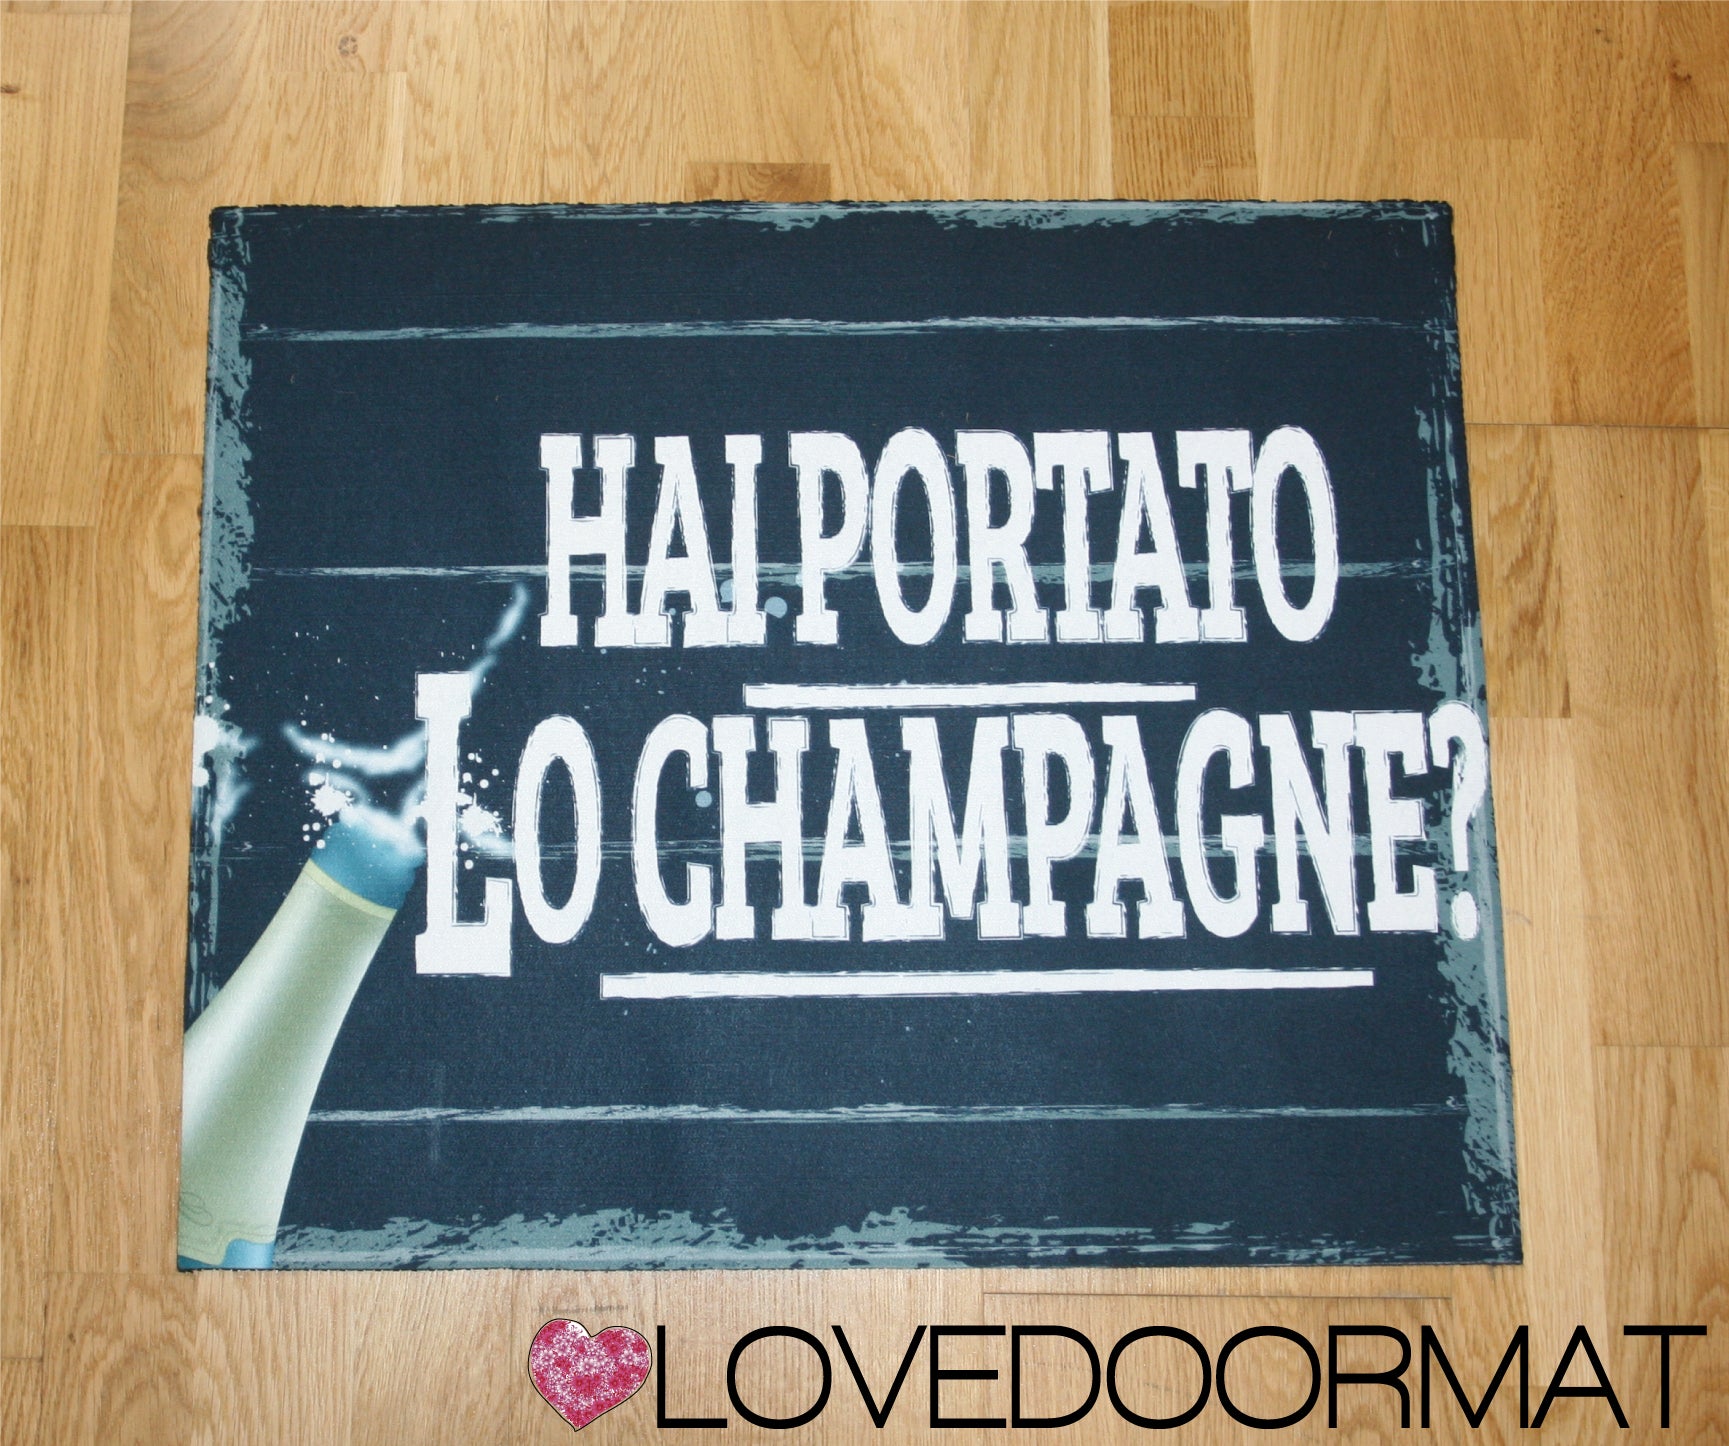 Tappeto Personalizzabile – Hai Portato lo Champagne – LOVEDOORMAT in Feltro e Gomma, 100% asciugapassI